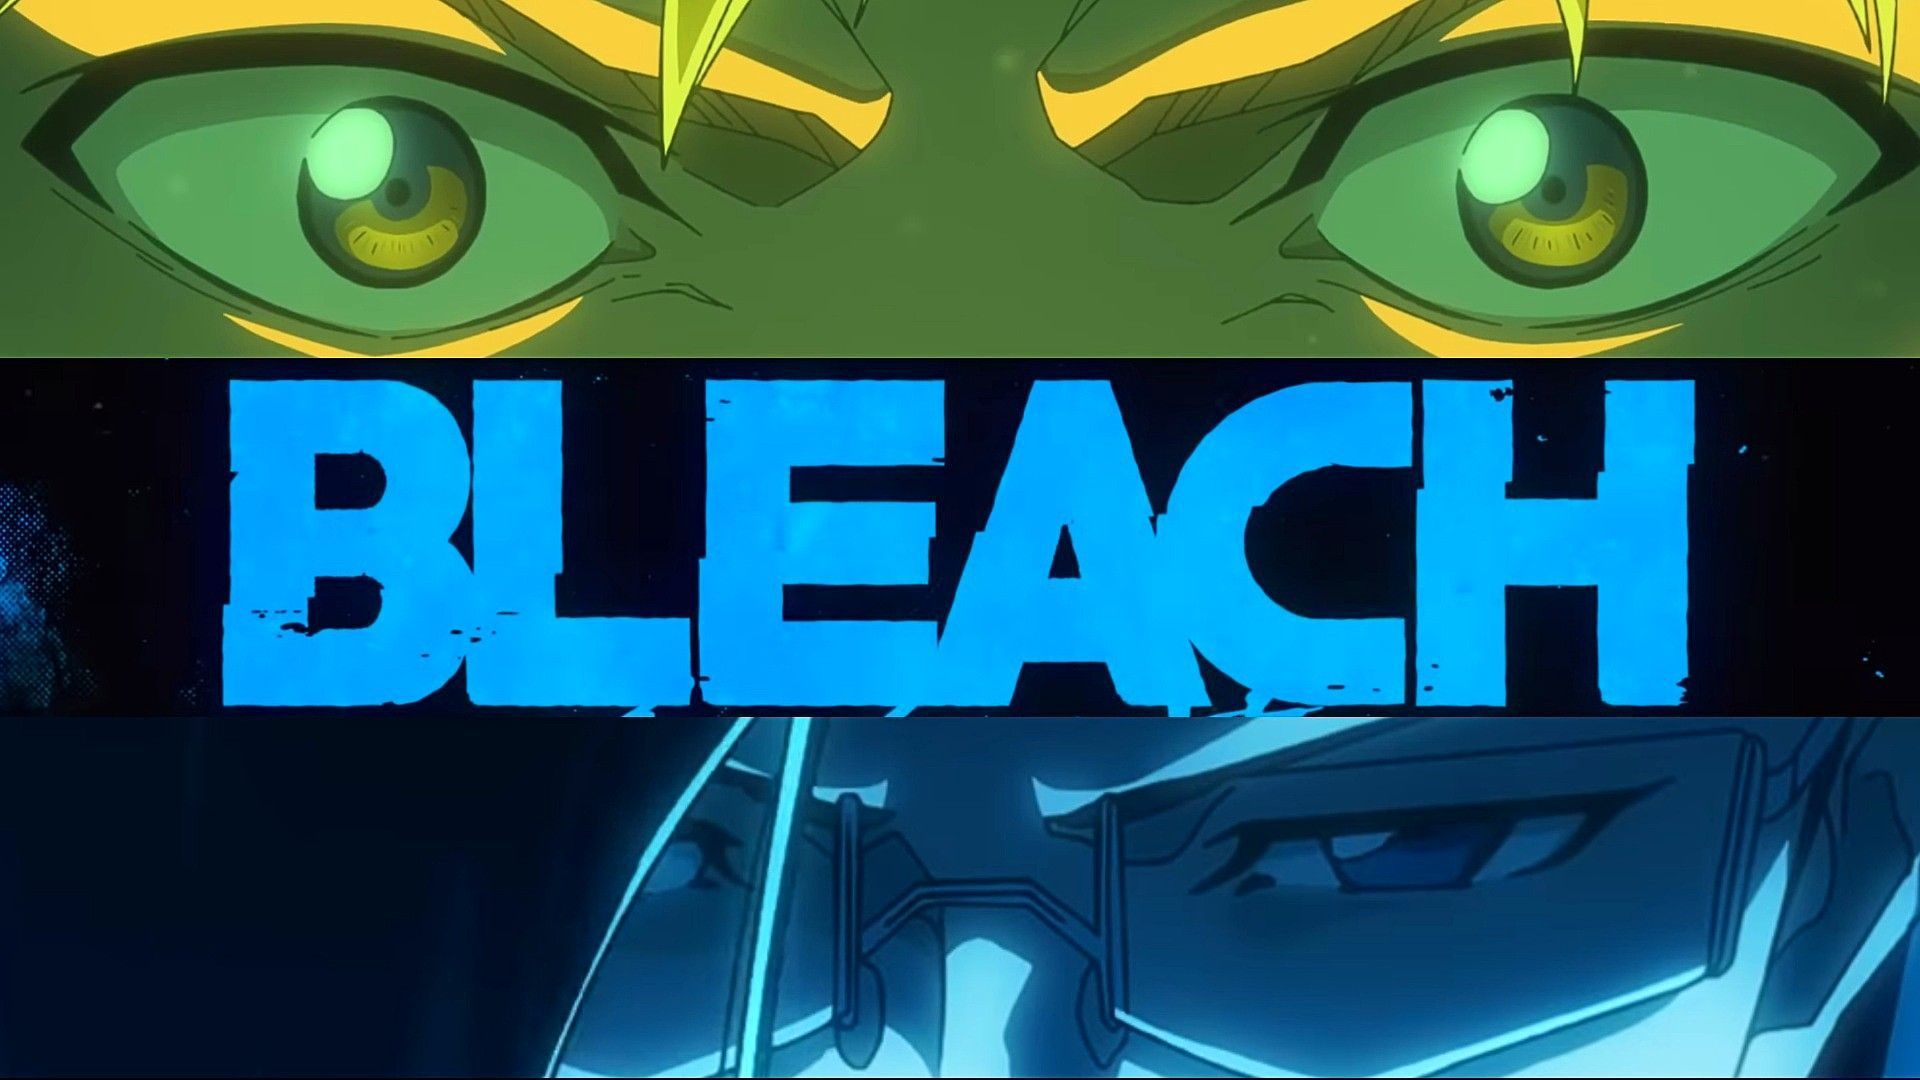 Bleach new episode has been leaked (Image via Studio Pierrot)